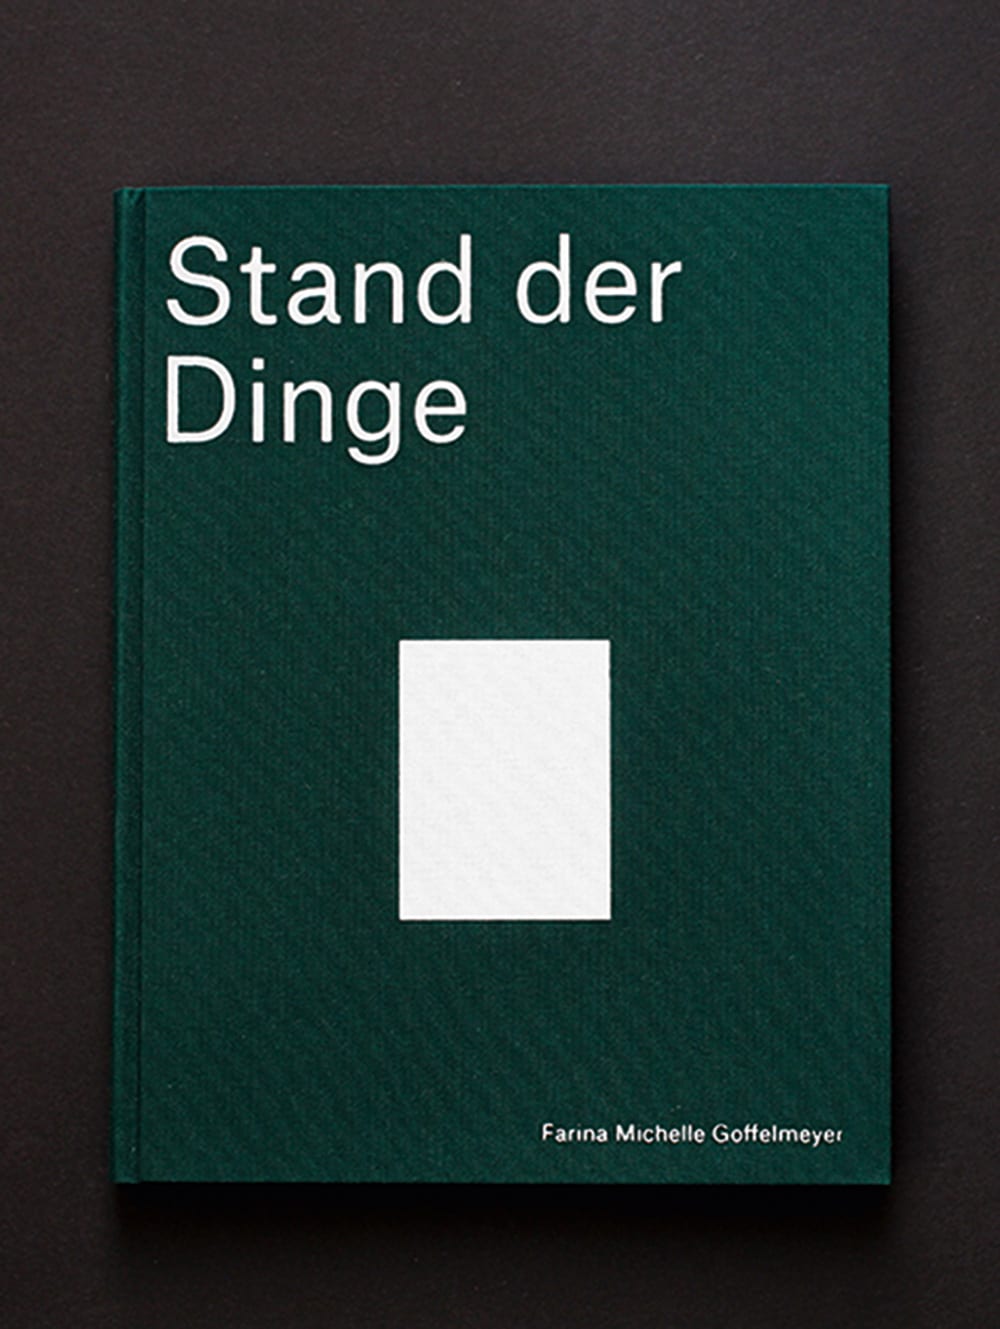 Dunkelgrünes Cover des Buches "Stand der Dinge" von Farina Michelle Goffelmeyer mit weißem Rechteck in der Mitte